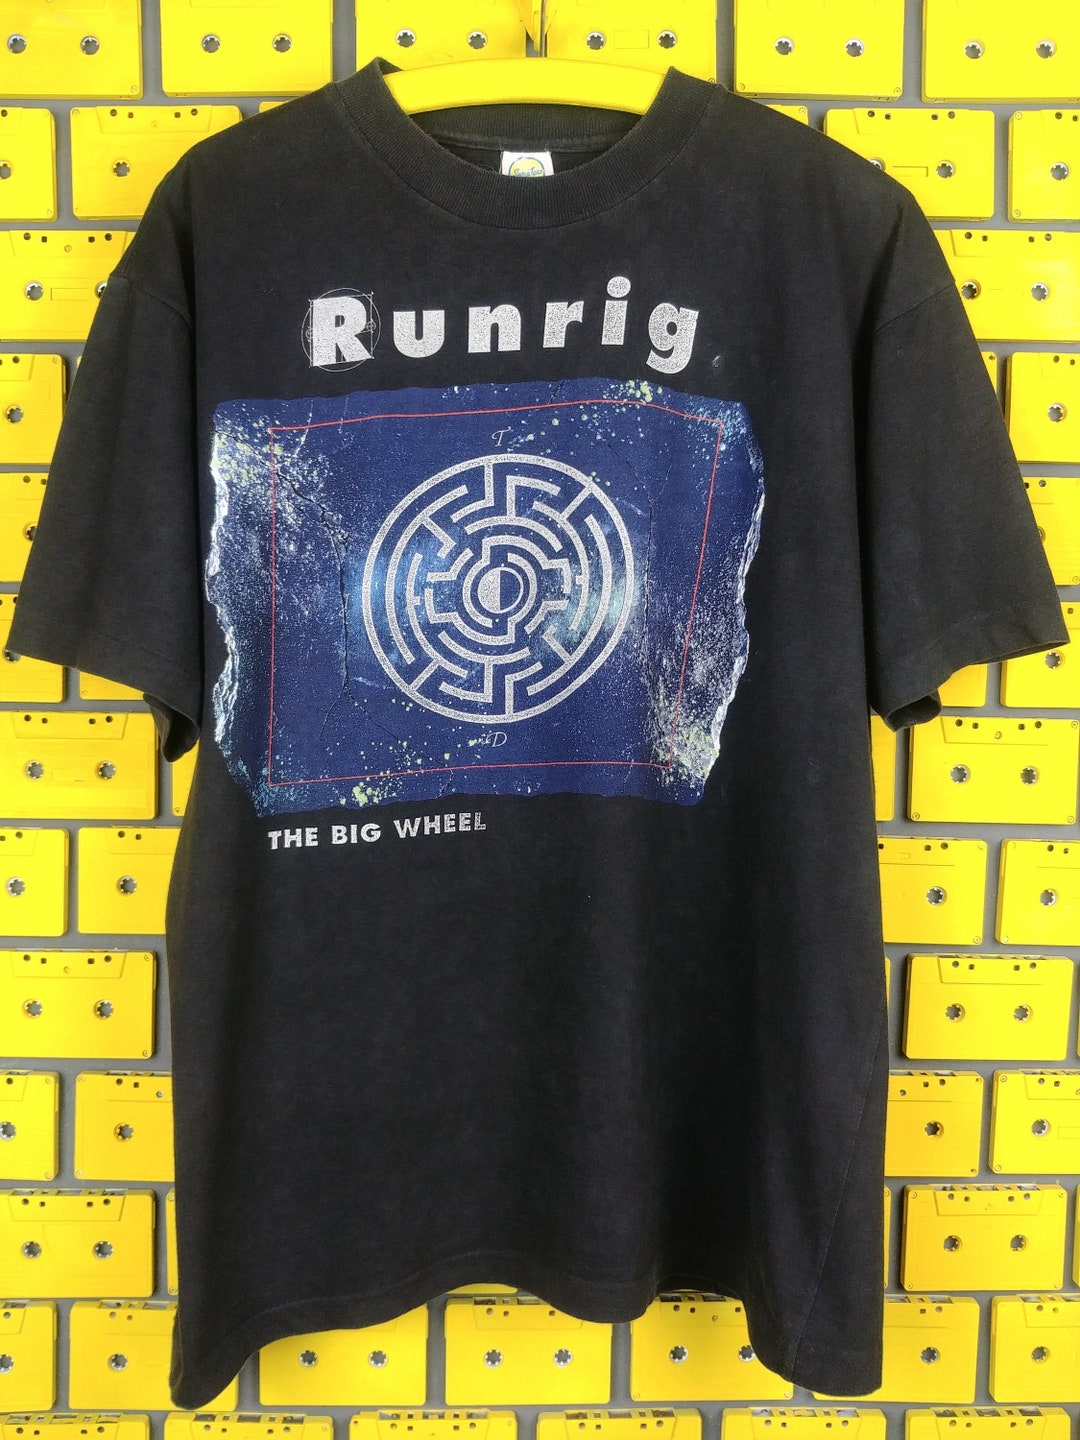 Vintage 1991 Runrig Tour T-shirt the Big Wheel Album Promo - Etsy